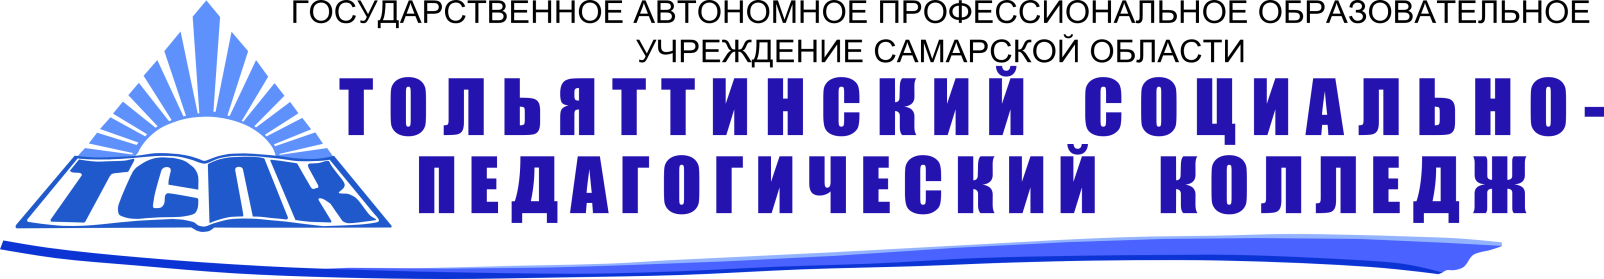 Социально-педагогический колледж Тольятти. Колледж ТСПК Тольятти. Эмблема ТСПК Тольятти. ТСПК логотип колледж. Автономное учреждение самарской области